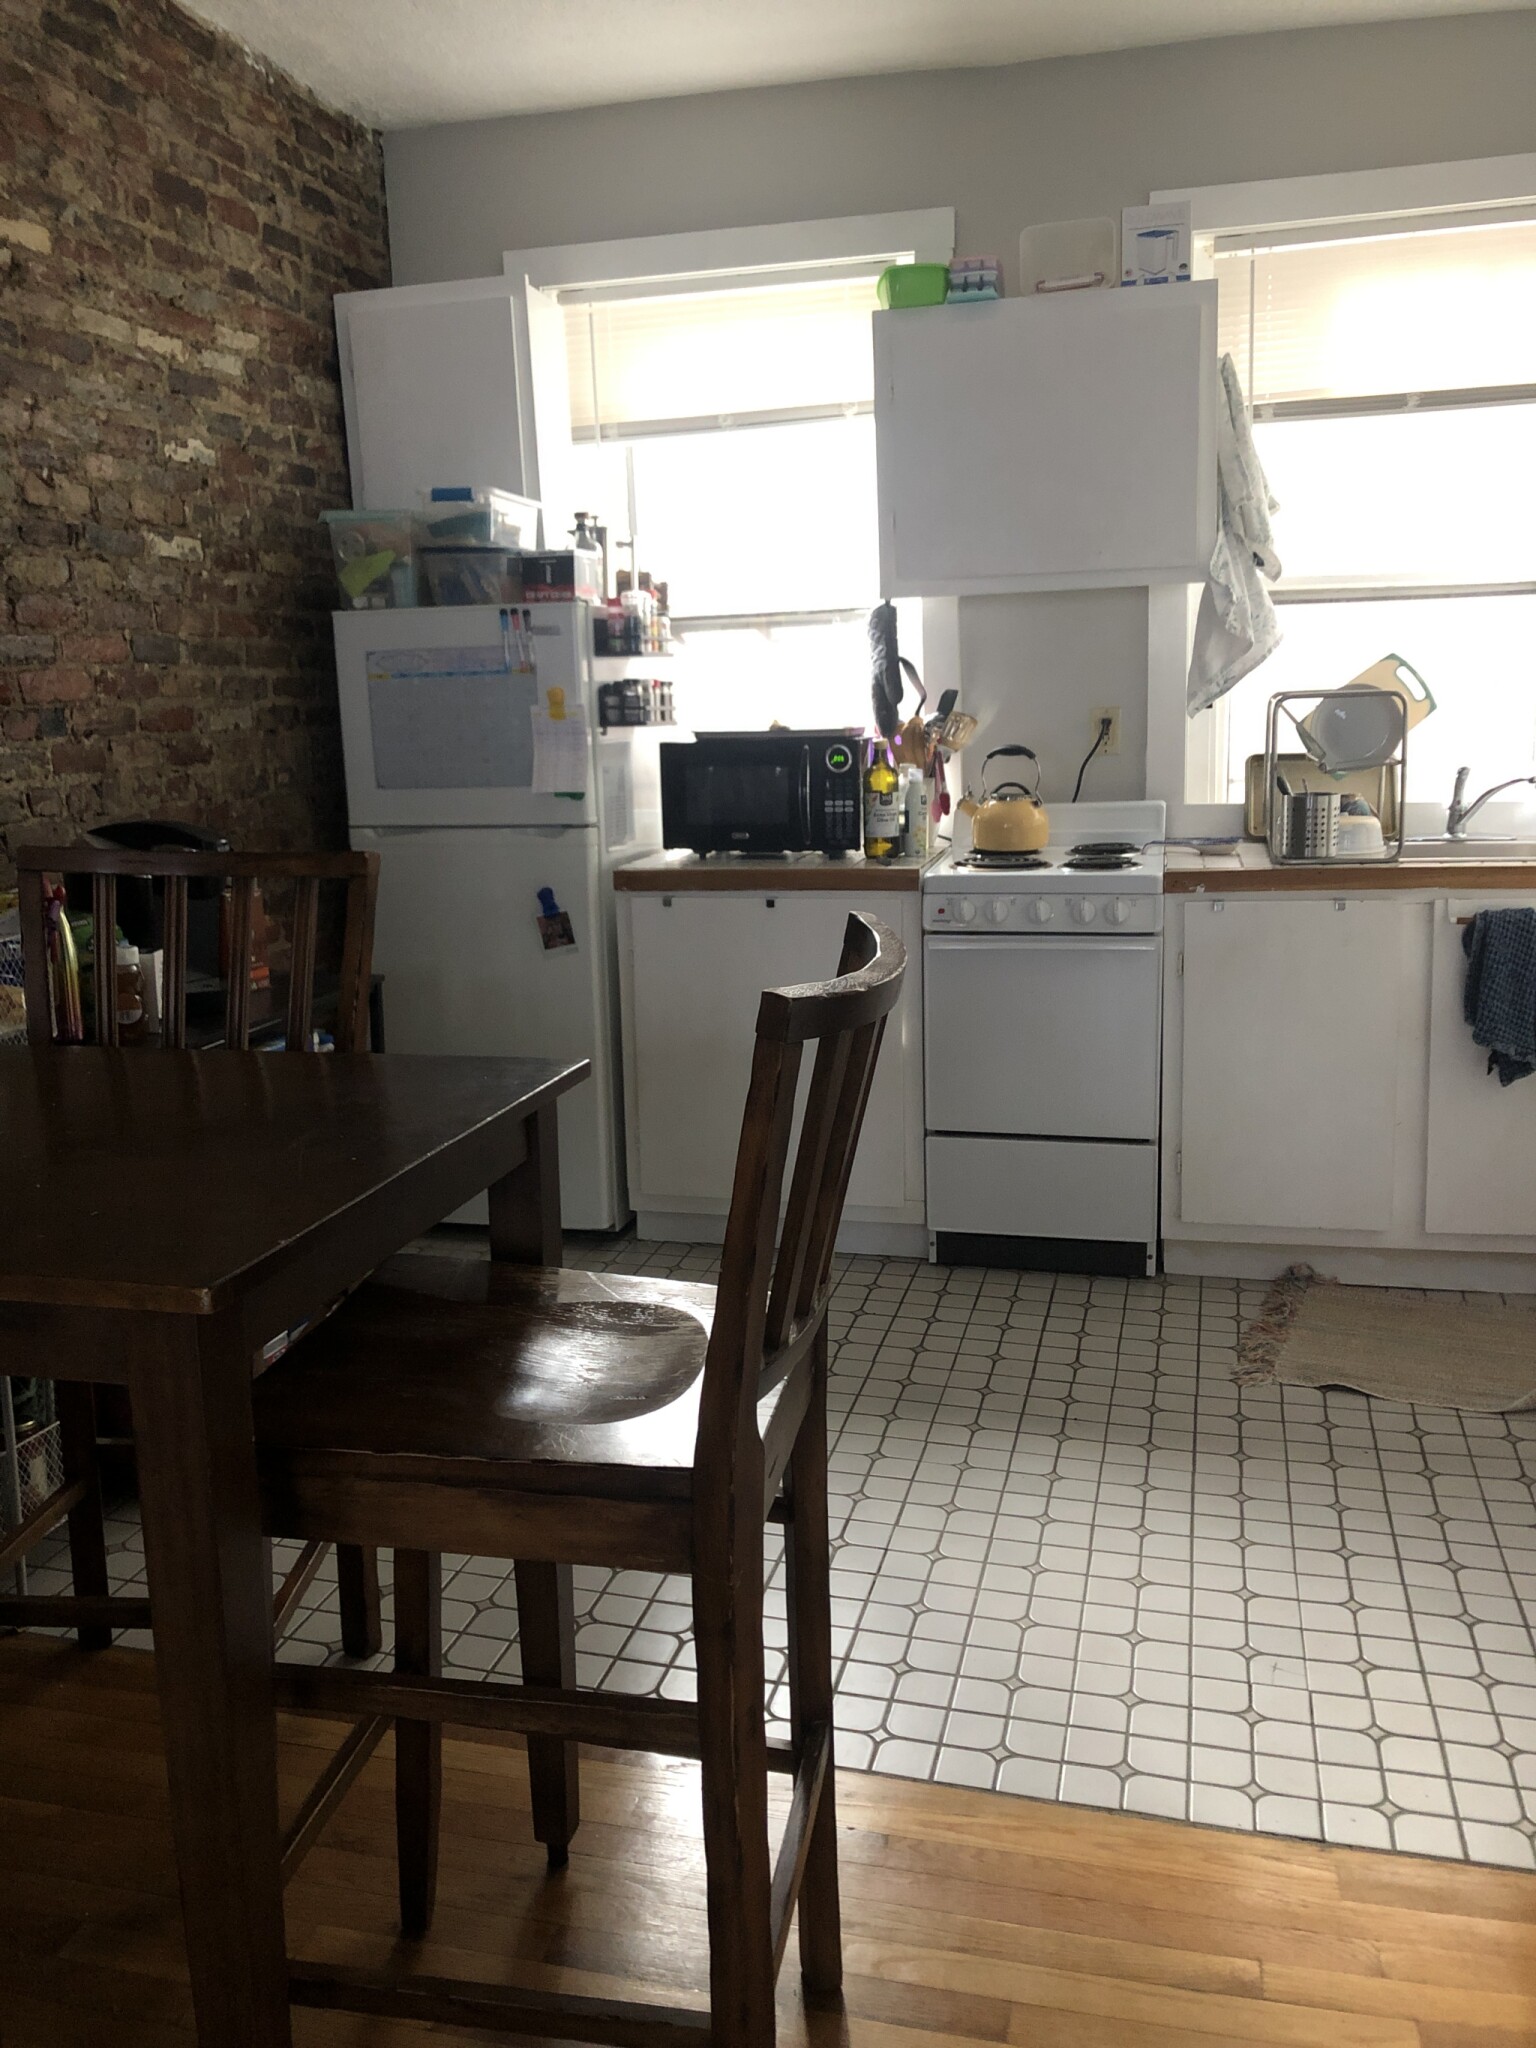 Photos of apartment on GARDEN St.,Boston MA 02114